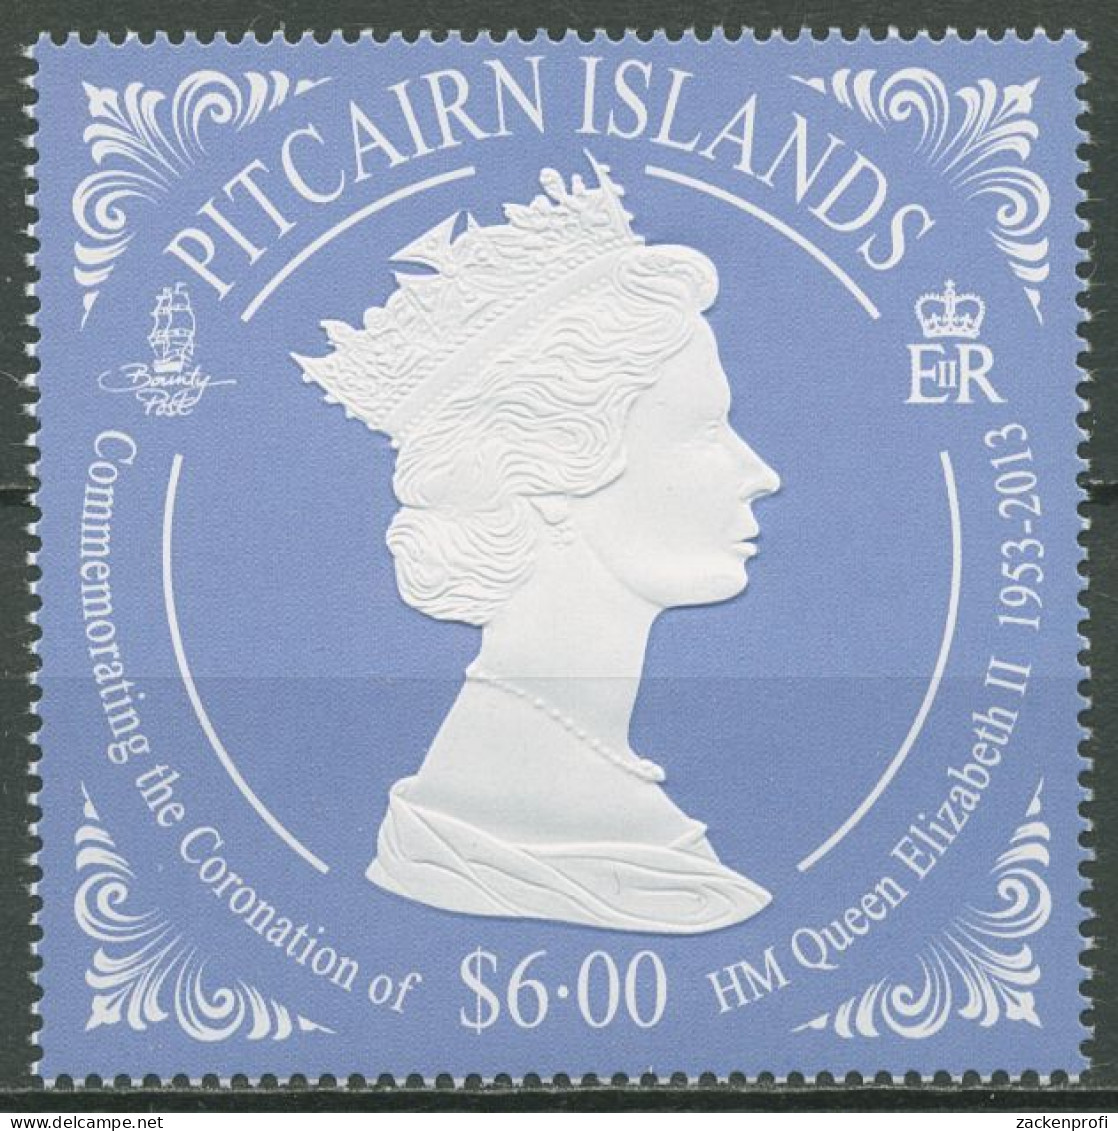 Pitcairn 2013 60 Jahre Krönung Königin Elisabeths 883 Postfrisch - Pitcairn Islands